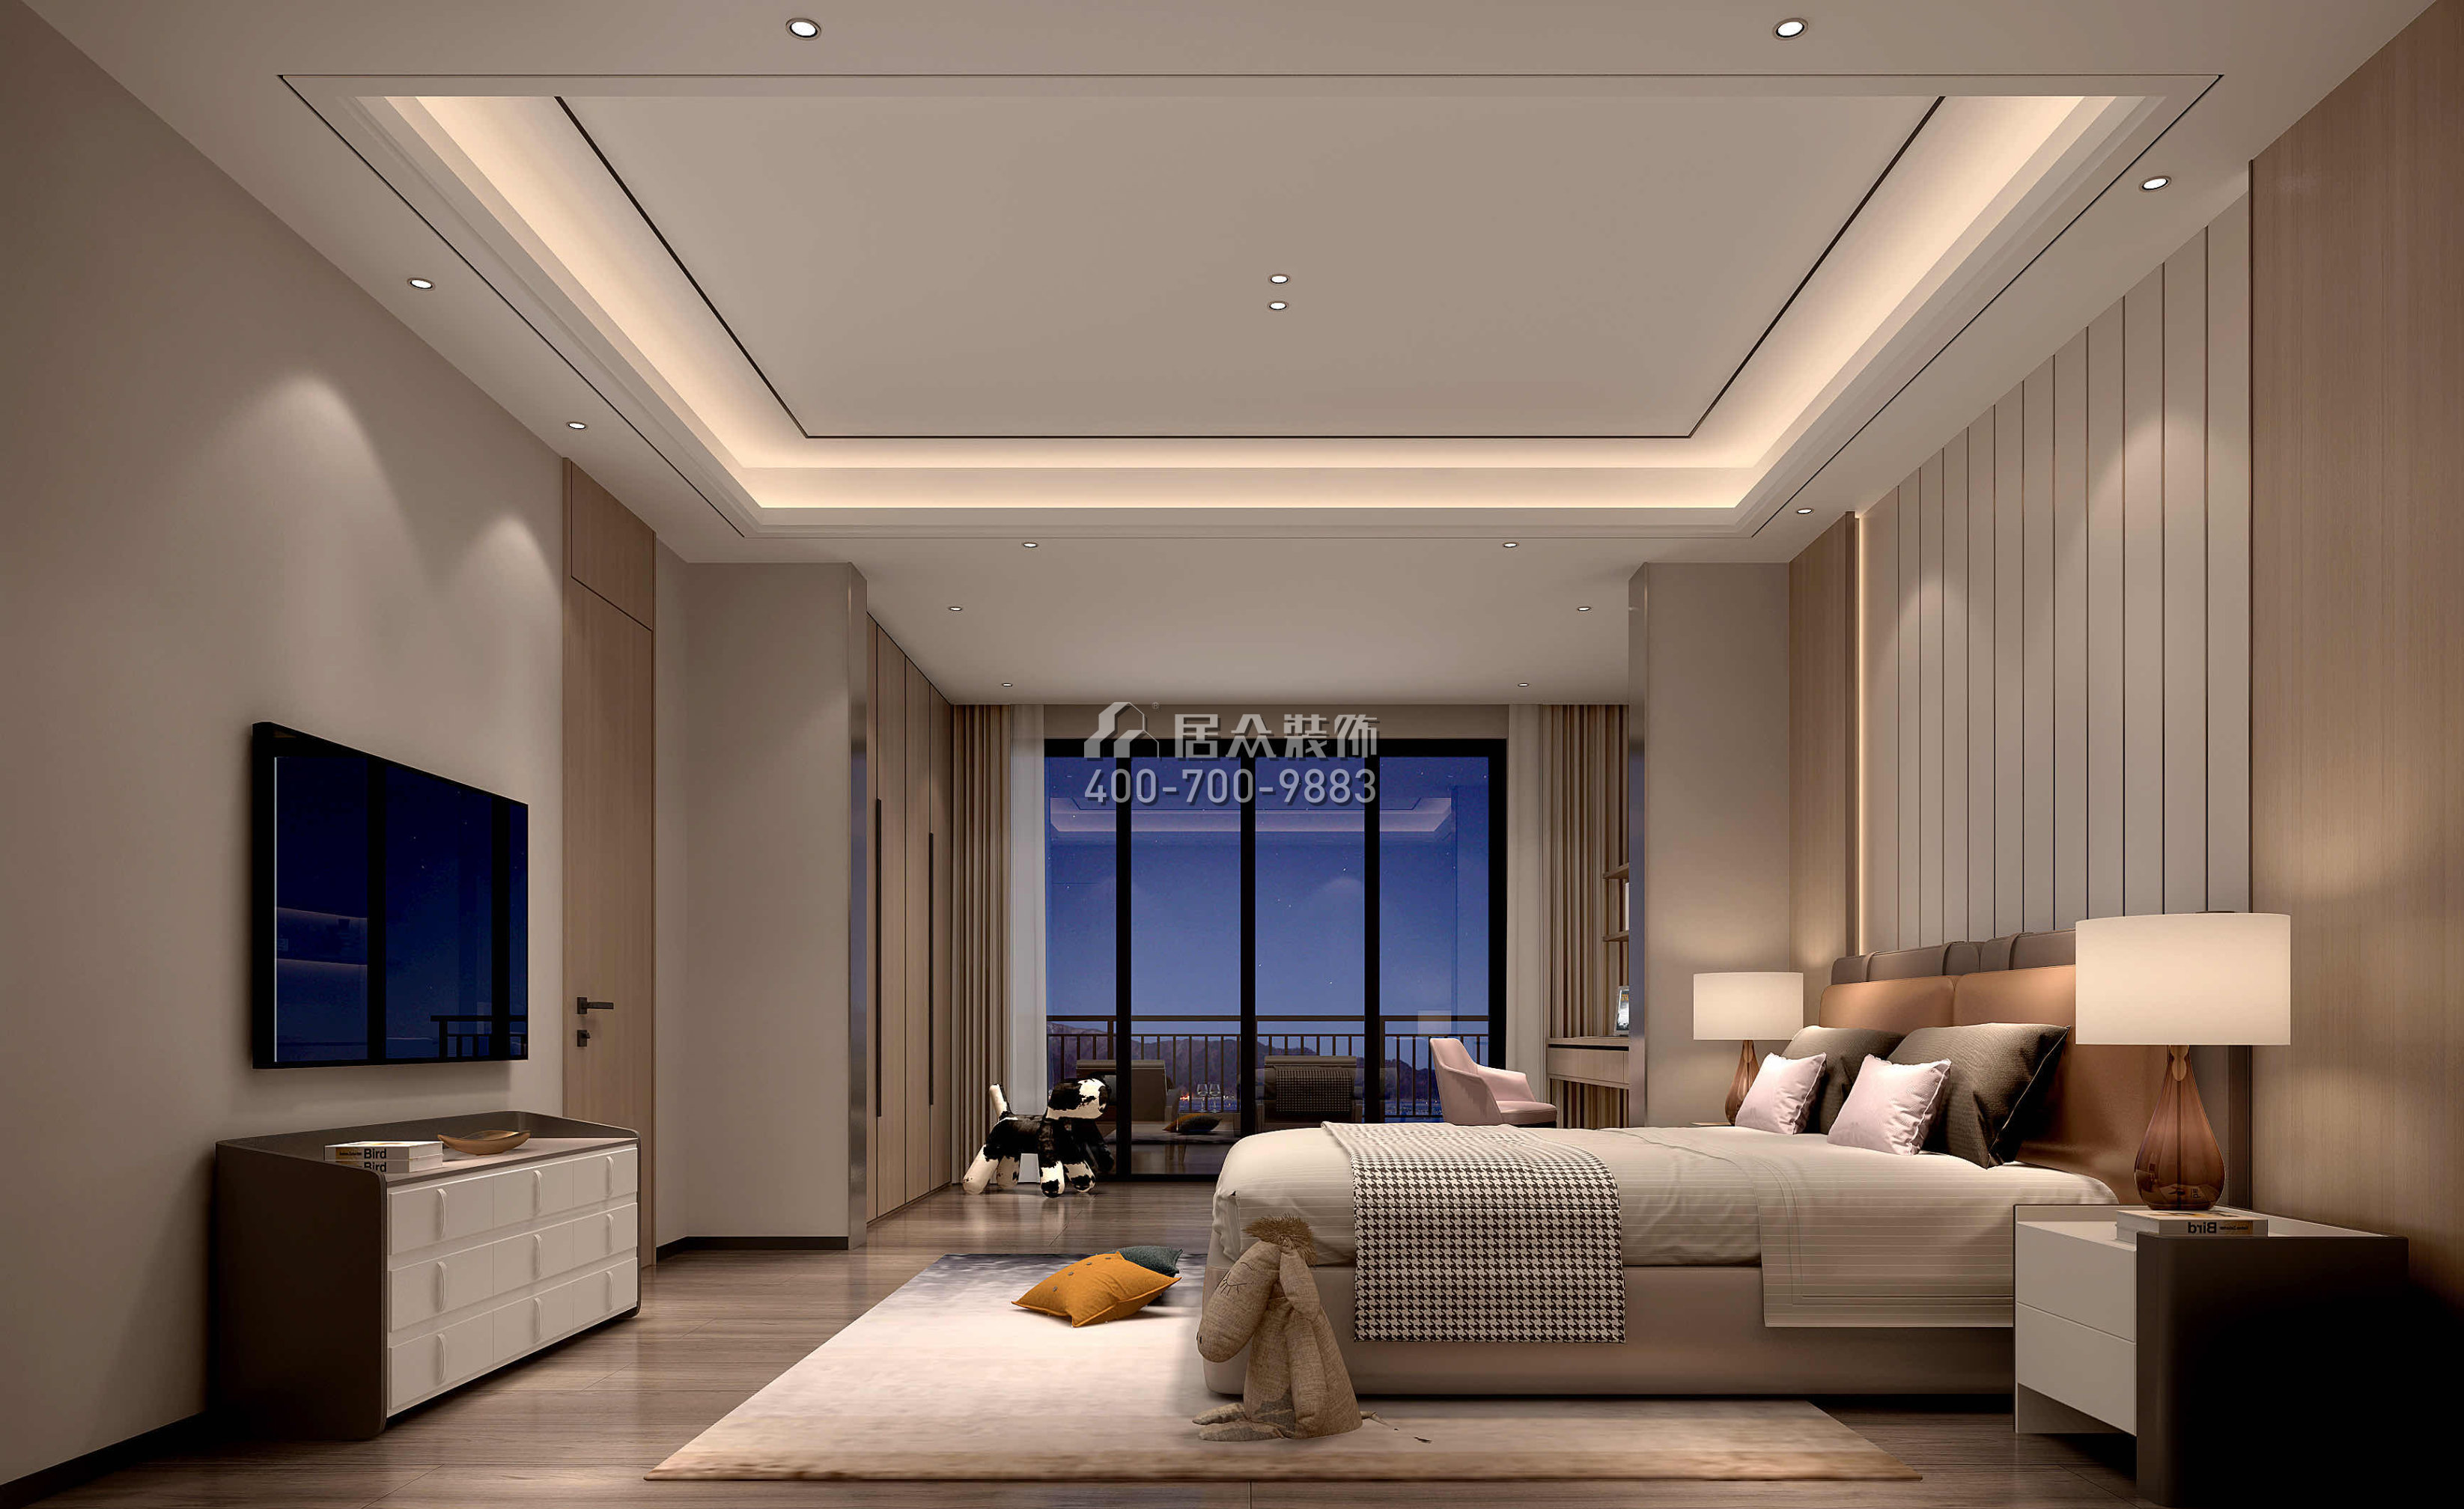 海逸豪庭366平方米現代簡約風格別墅戶型臥室裝修效果圖